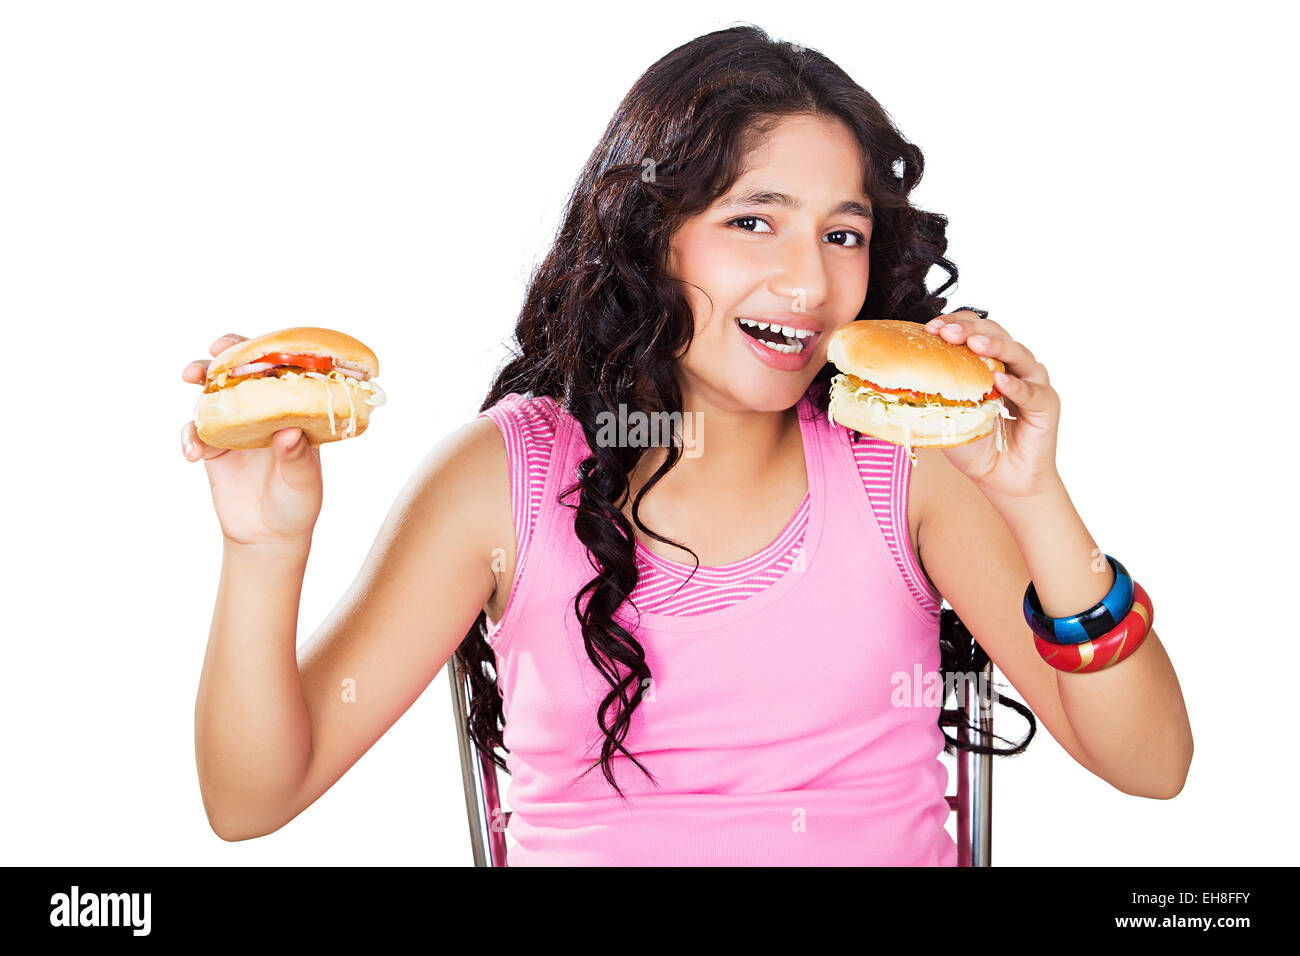 1 indian joven adolescente comiendo hamburguesas deliciosas Foto de stock